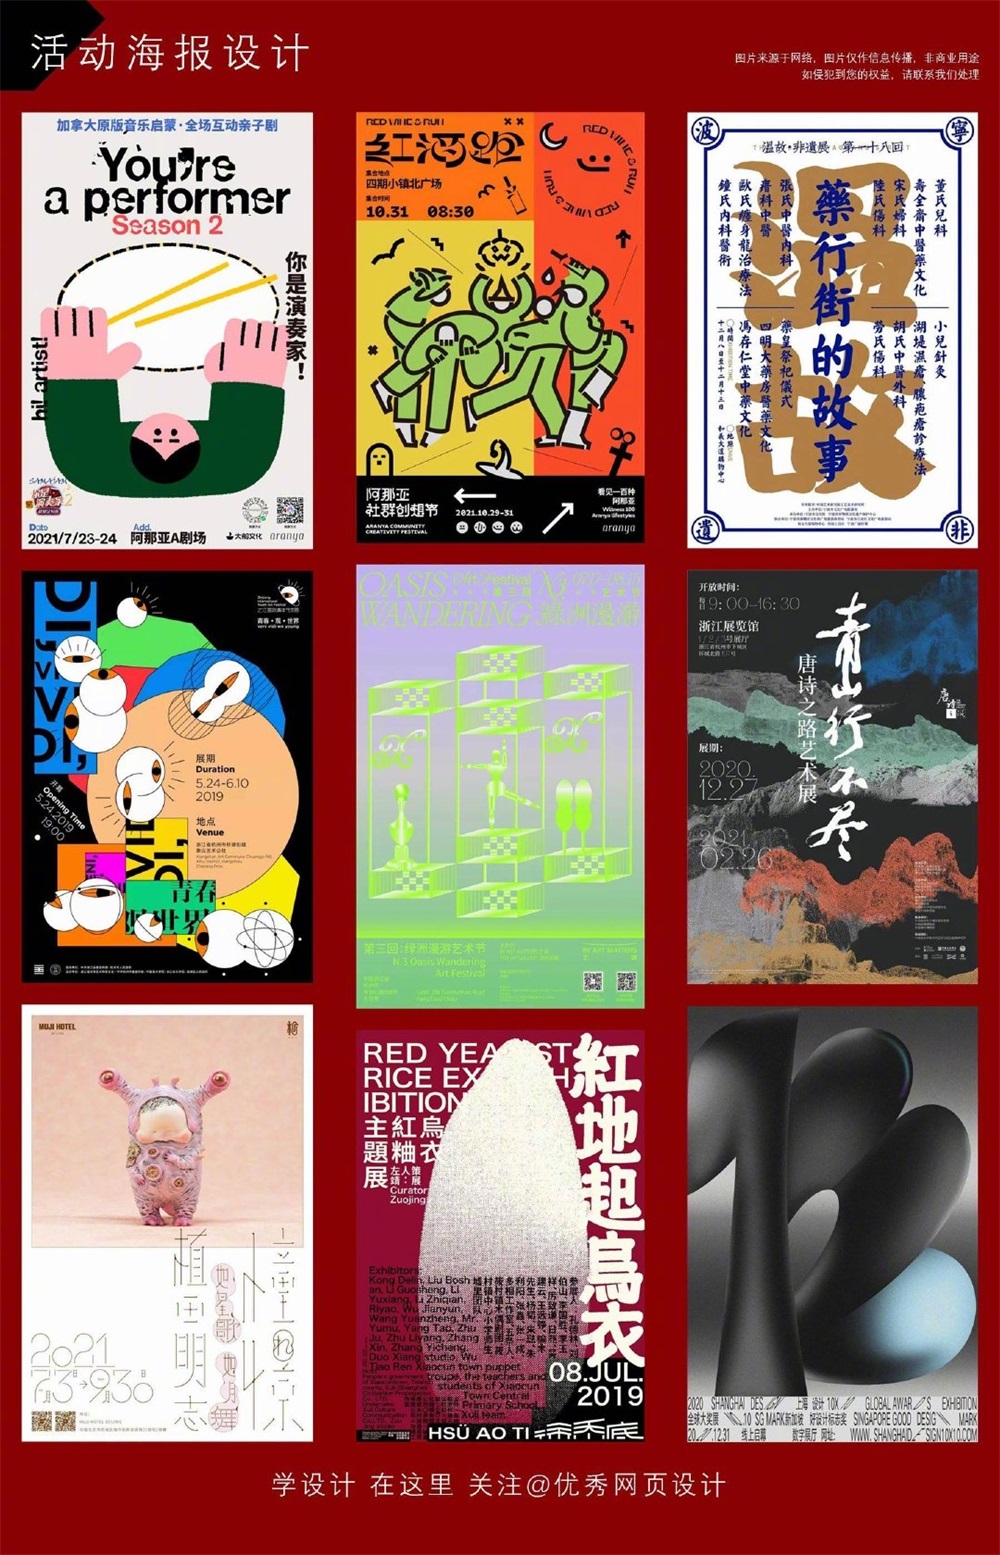 81 张设计感满满的中文海报设计